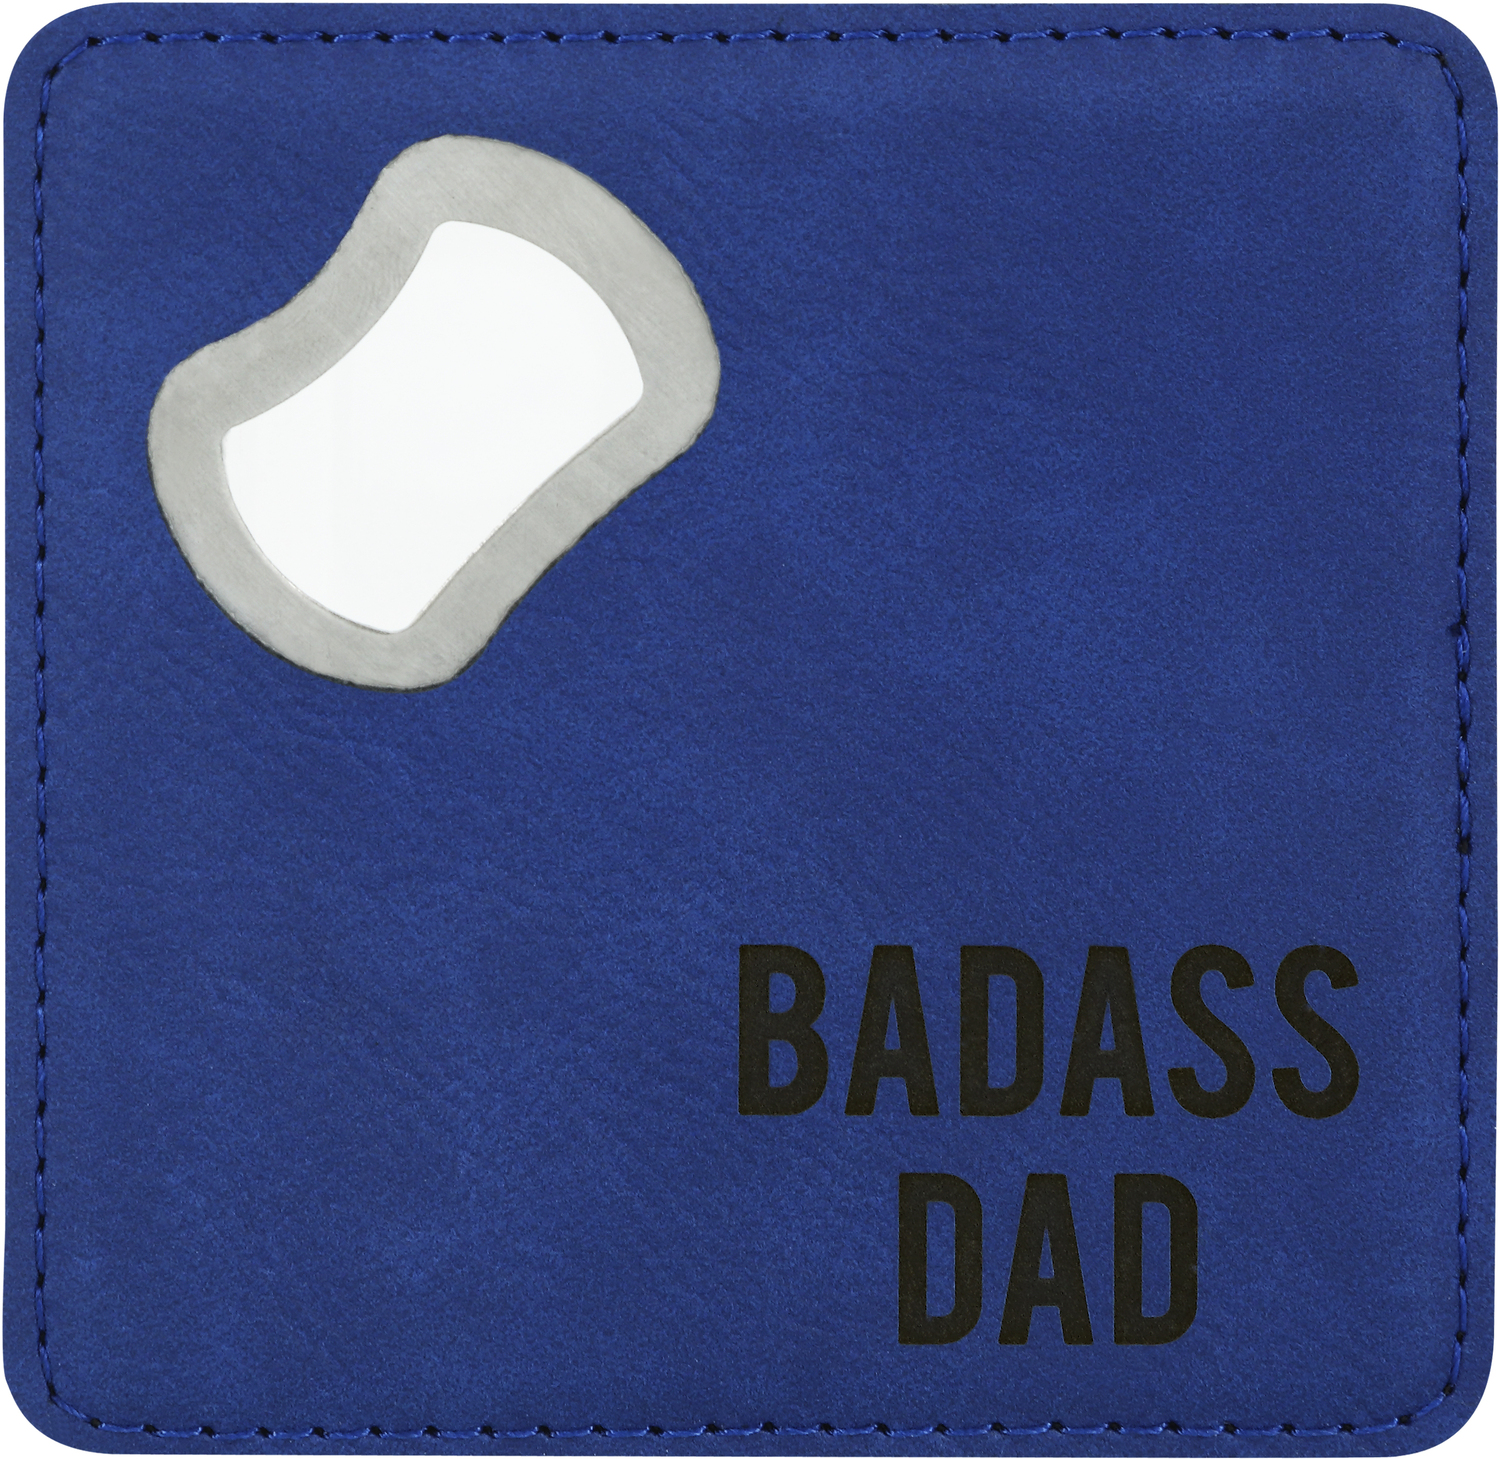 Badass Dad by Man Made - Badass Dad - 4" x 4" Bottle Opener Coaster